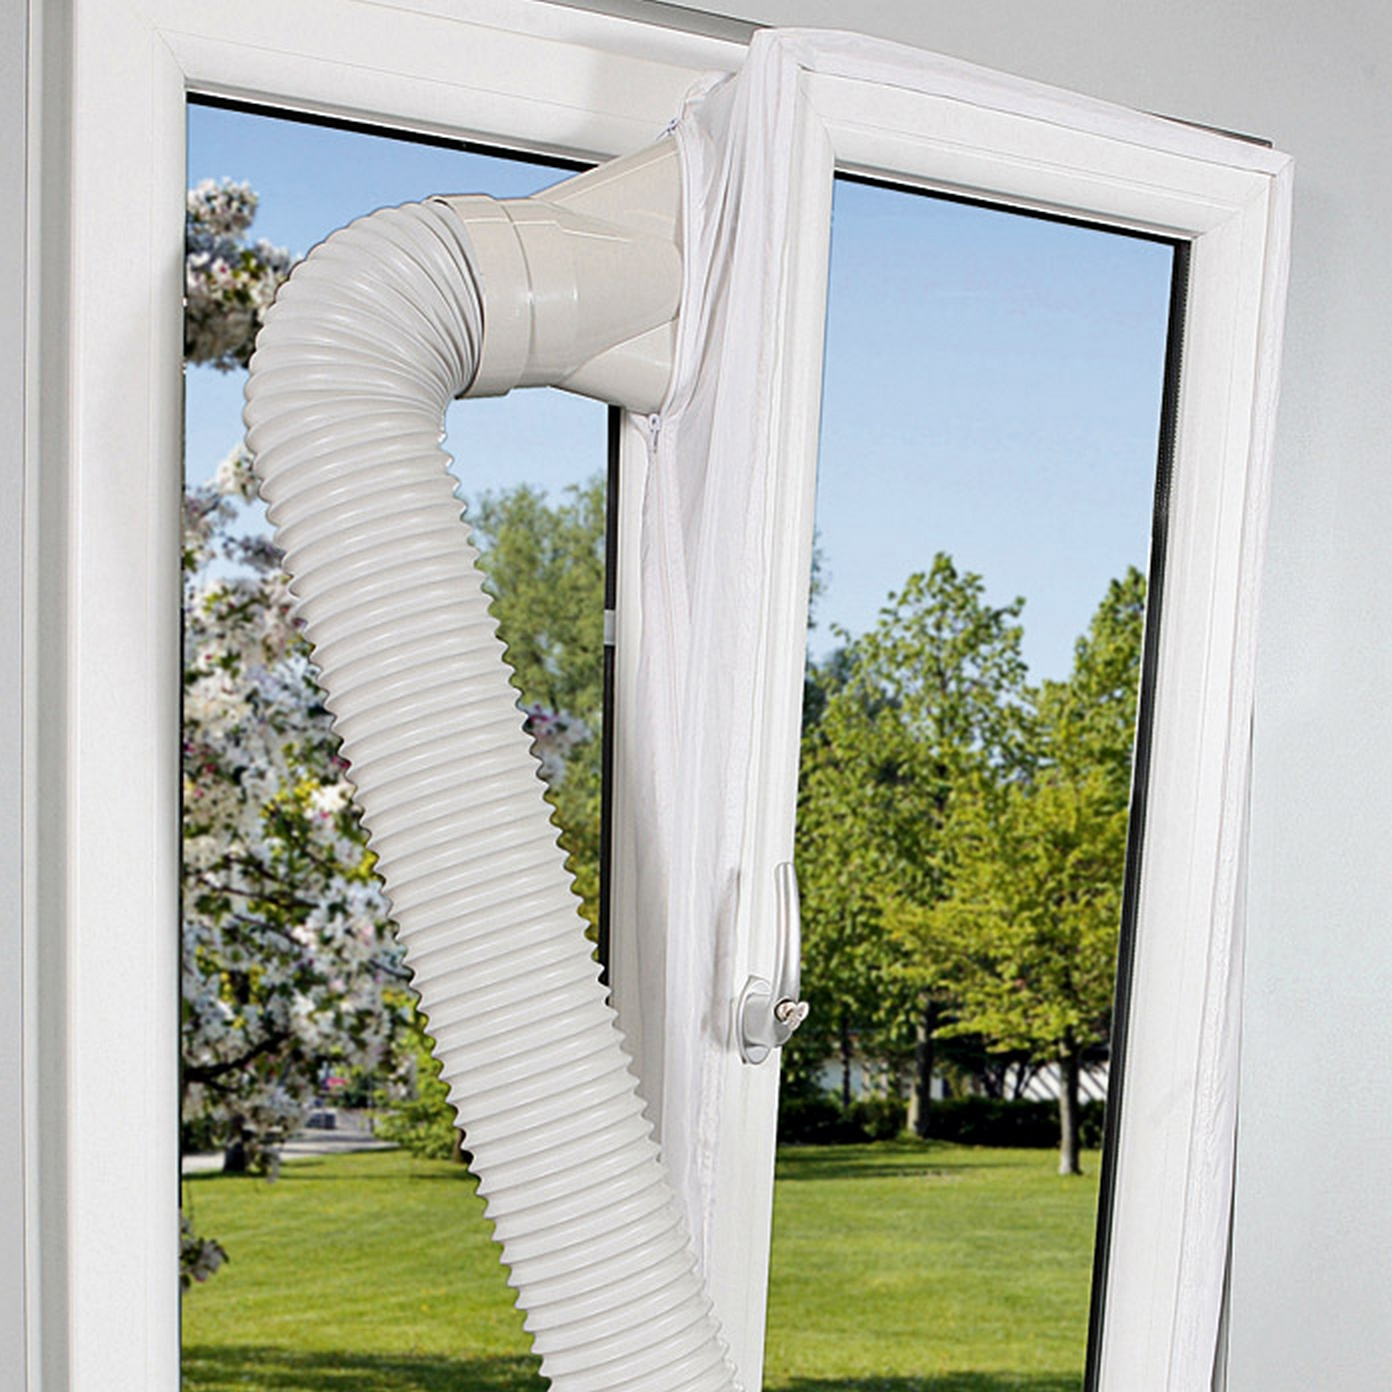 Hot Air Stop Klimagerät mobile Klimaanlage Fensterabdichtung für Abluftschlauch